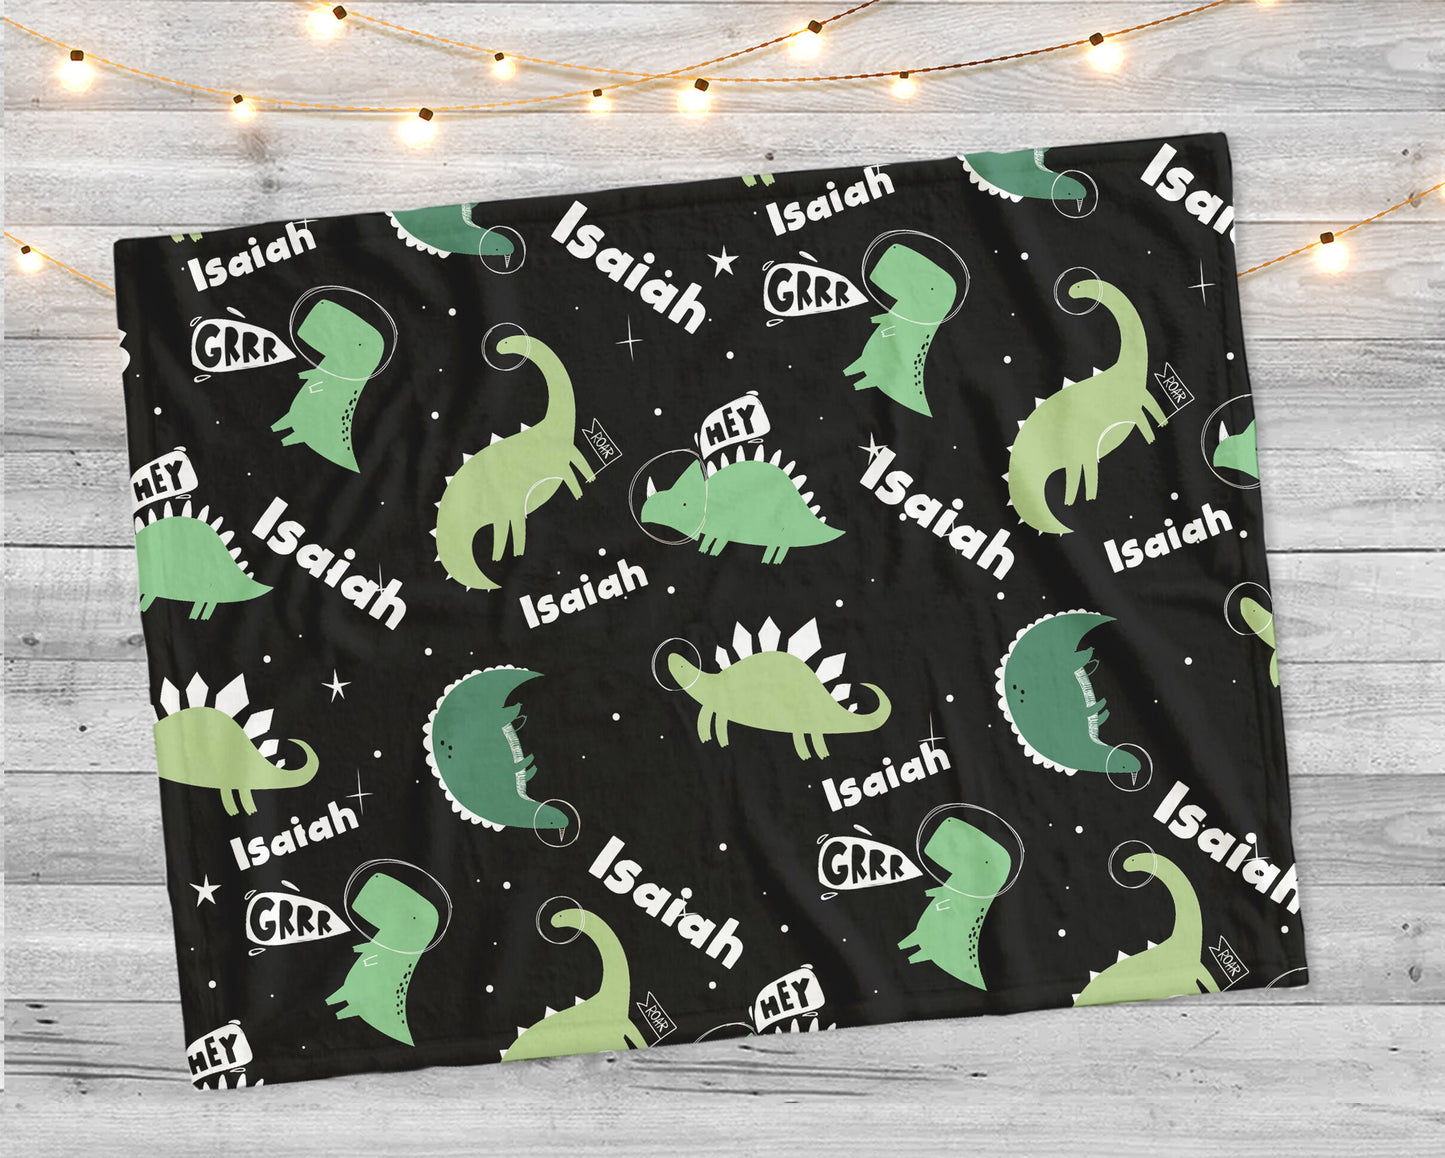 Personalize kids blanket, Minky or Sherpa custom blanket, Baby blanket, Kids name Blanket, birthday gift idea